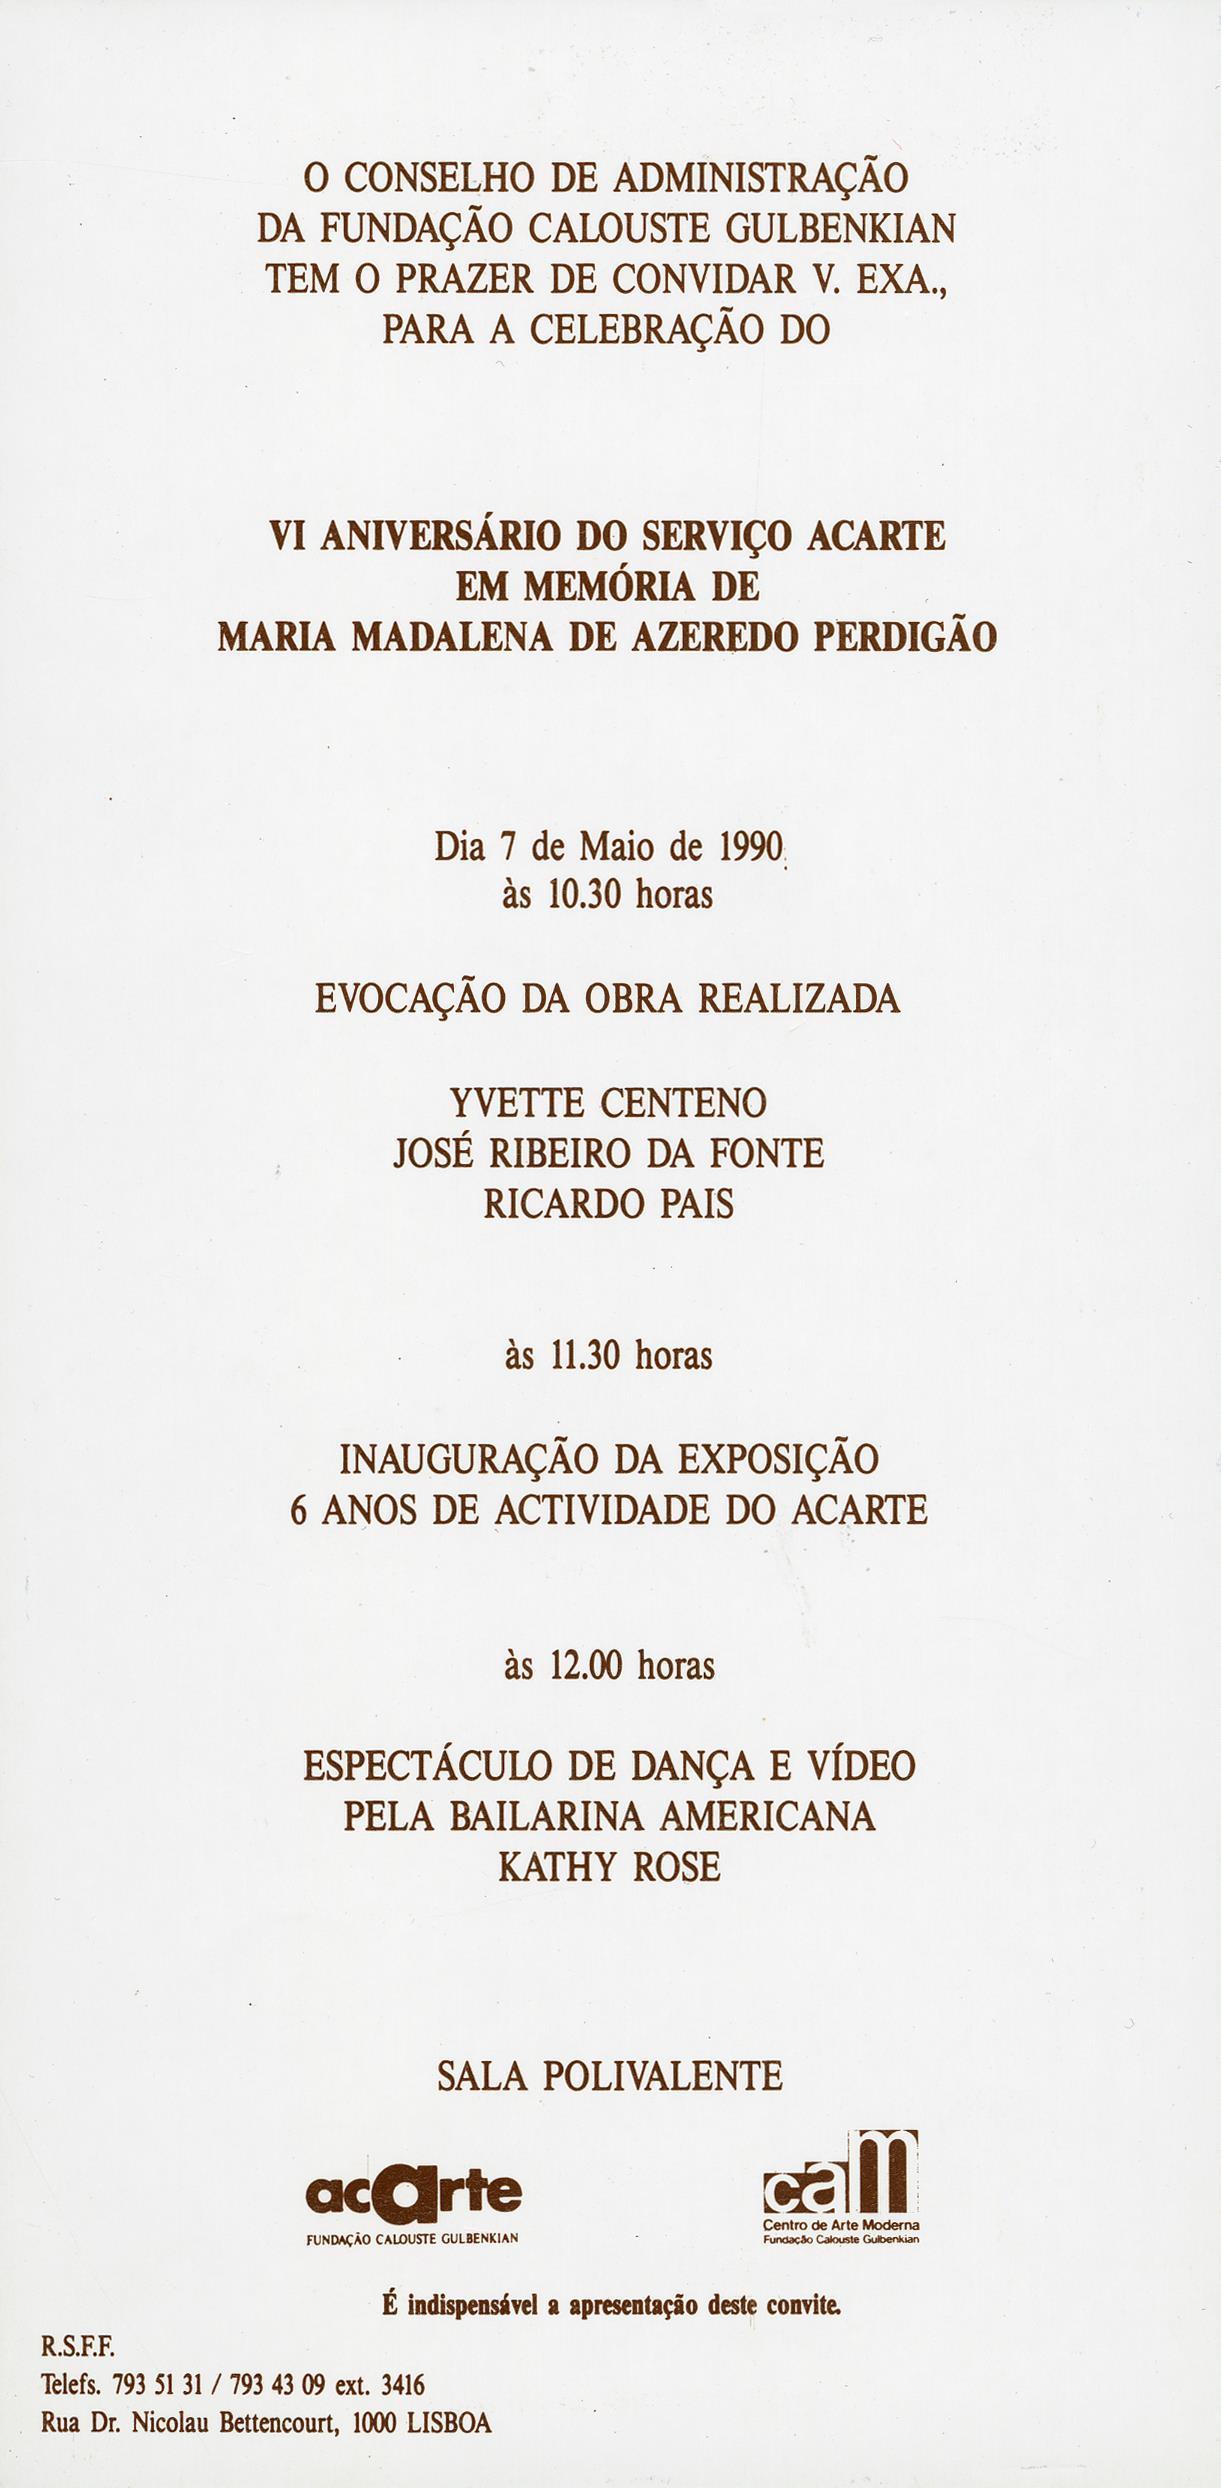 VI Aniversário do ACARTE, 1984 – 1990